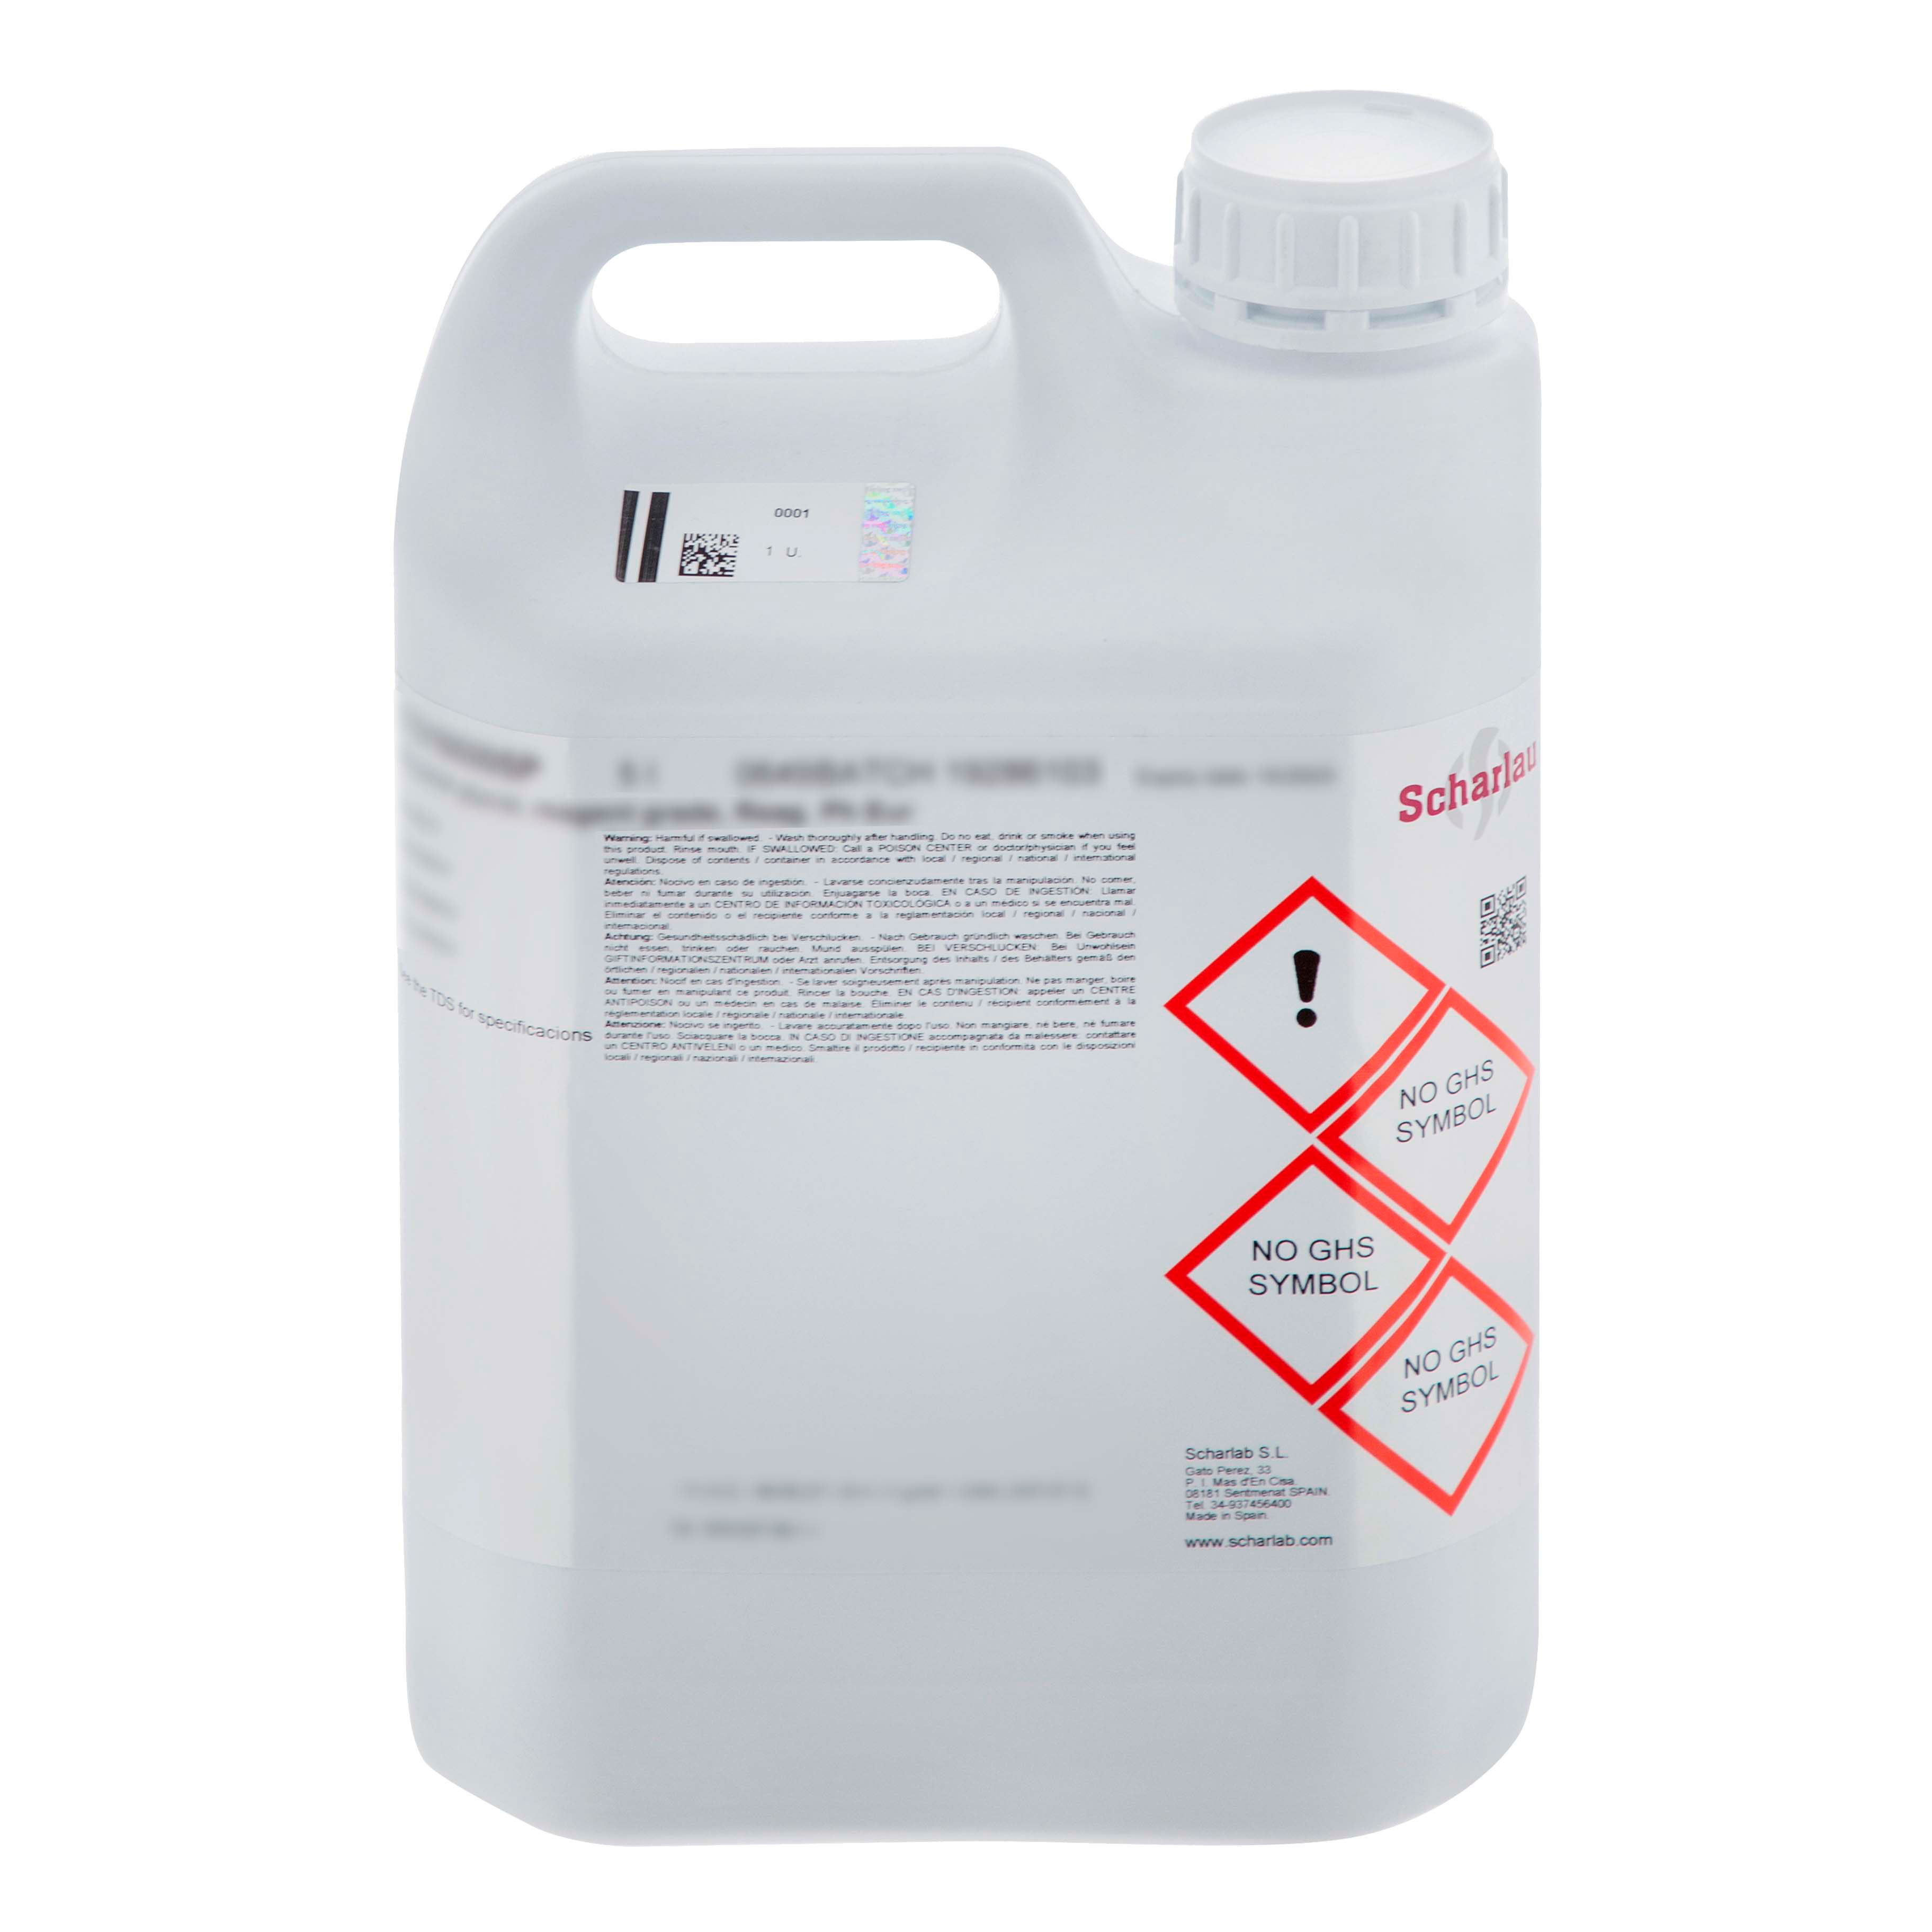 Sodium hydroxide, solution 35% w/v, EssentQ®